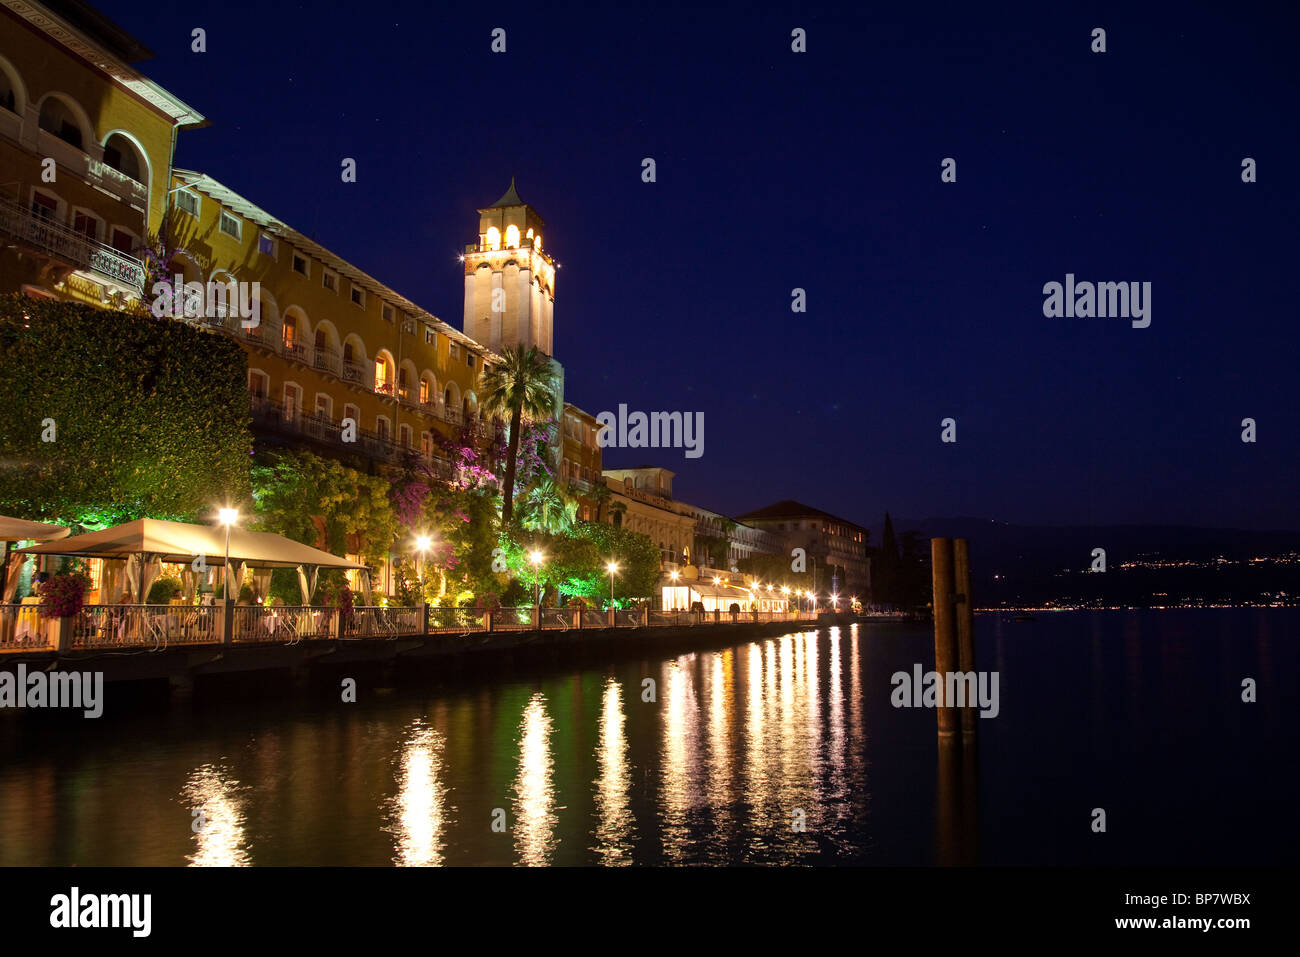 Hôtels / Restaurants cafe à Gardone sur les rives du lac de Garde, Italie pendant la nuit Banque D'Images